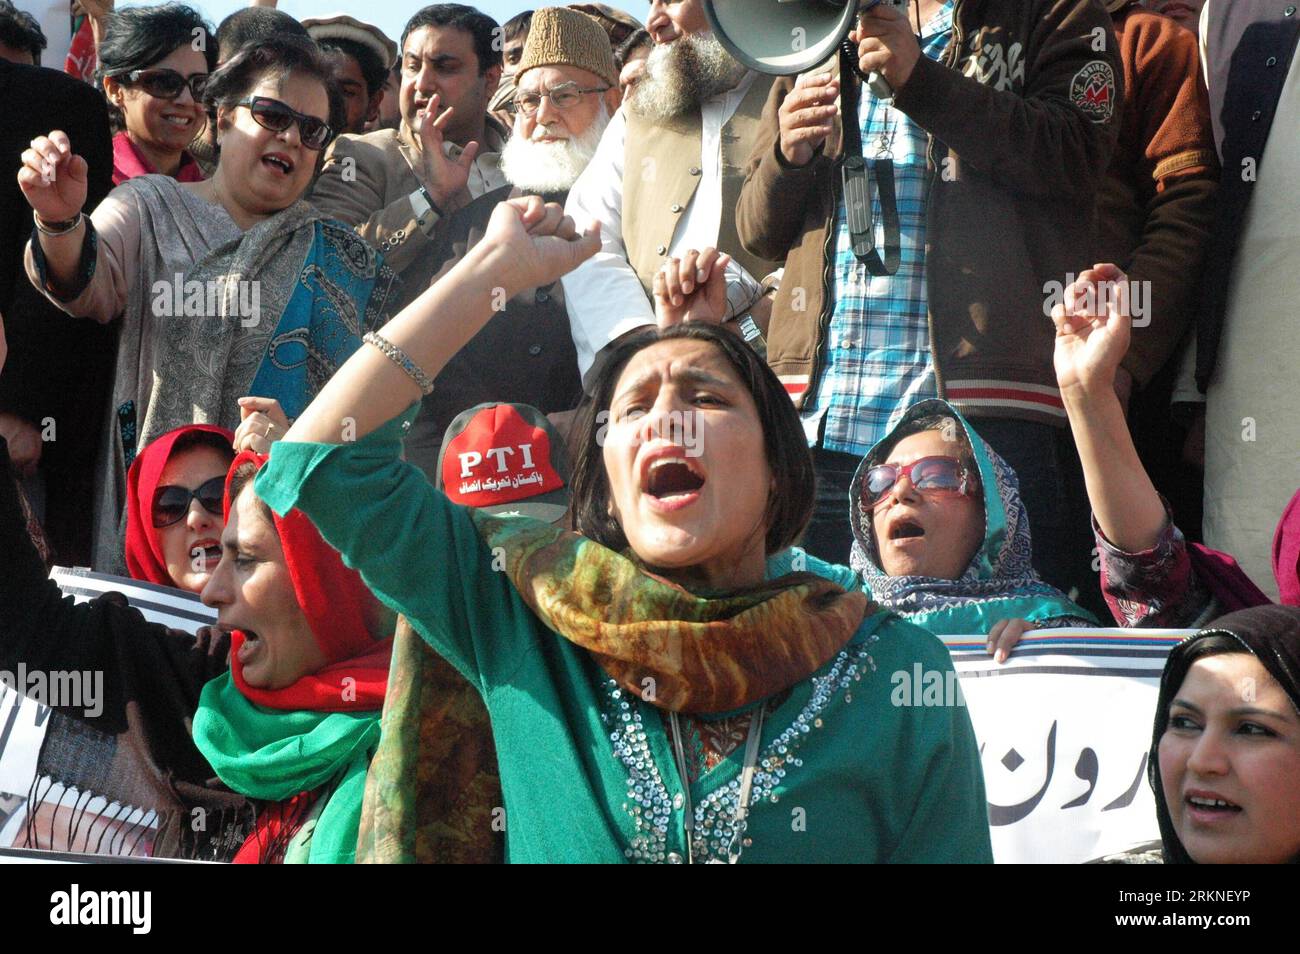 Bildnummer : 57109066 Datum : 25.02.2012 Copyright : imago/Xinhua (120225) -- ISLAMABAD, 25 février 2012 (Xinhua) -- des villageois tribaux pakistanais et des locaux participent à un rassemblement pour condamner les attaques de drones américains près de President House à Islamabad, capitale du Pakistan, le 25 février 2012. Des centaines de membres de tribus pakistanaises et leurs partisans politiques ont commencé samedi un sit-in de deux jours à Islamabad contre les frappes de drones américains dans les régions tribales. (Xinhua/Ahmad Kamal) (zx) PAKISTAN-ISLAMABAD-RALLYE-États-Unis DRONE PUBLICATIONxNOTxINxCHN Politik Demo Protest USA Drohne Unbemannte Drohnenangriff Angriff premiumd Banque D'Images